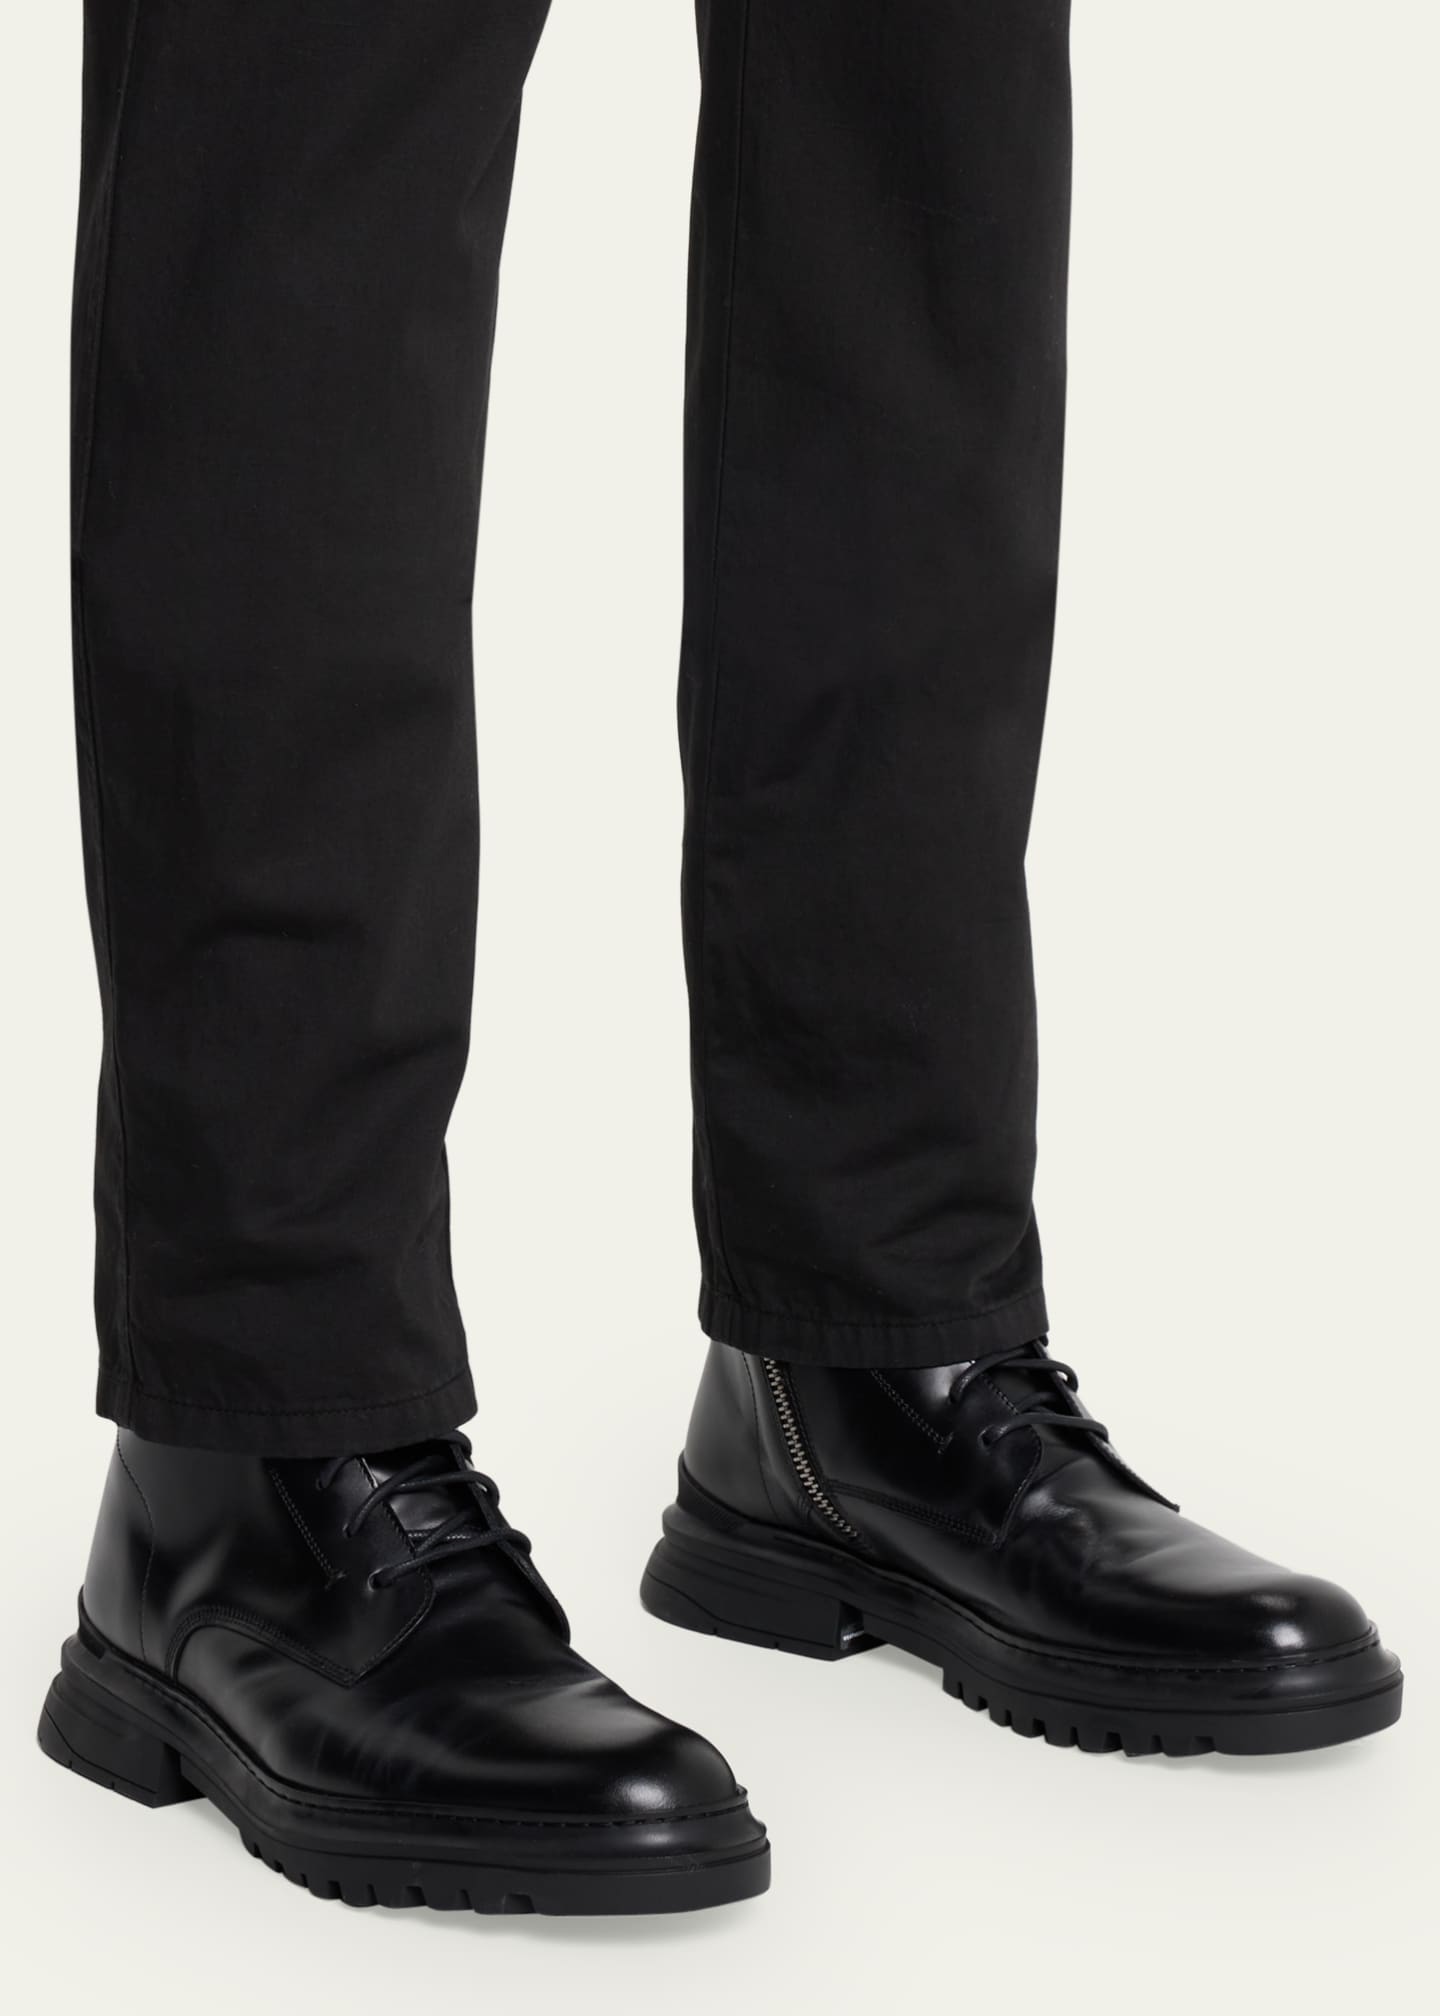 Aquatalia Men's Edmundo Weatherproof Leather Zip Combat Boots ...